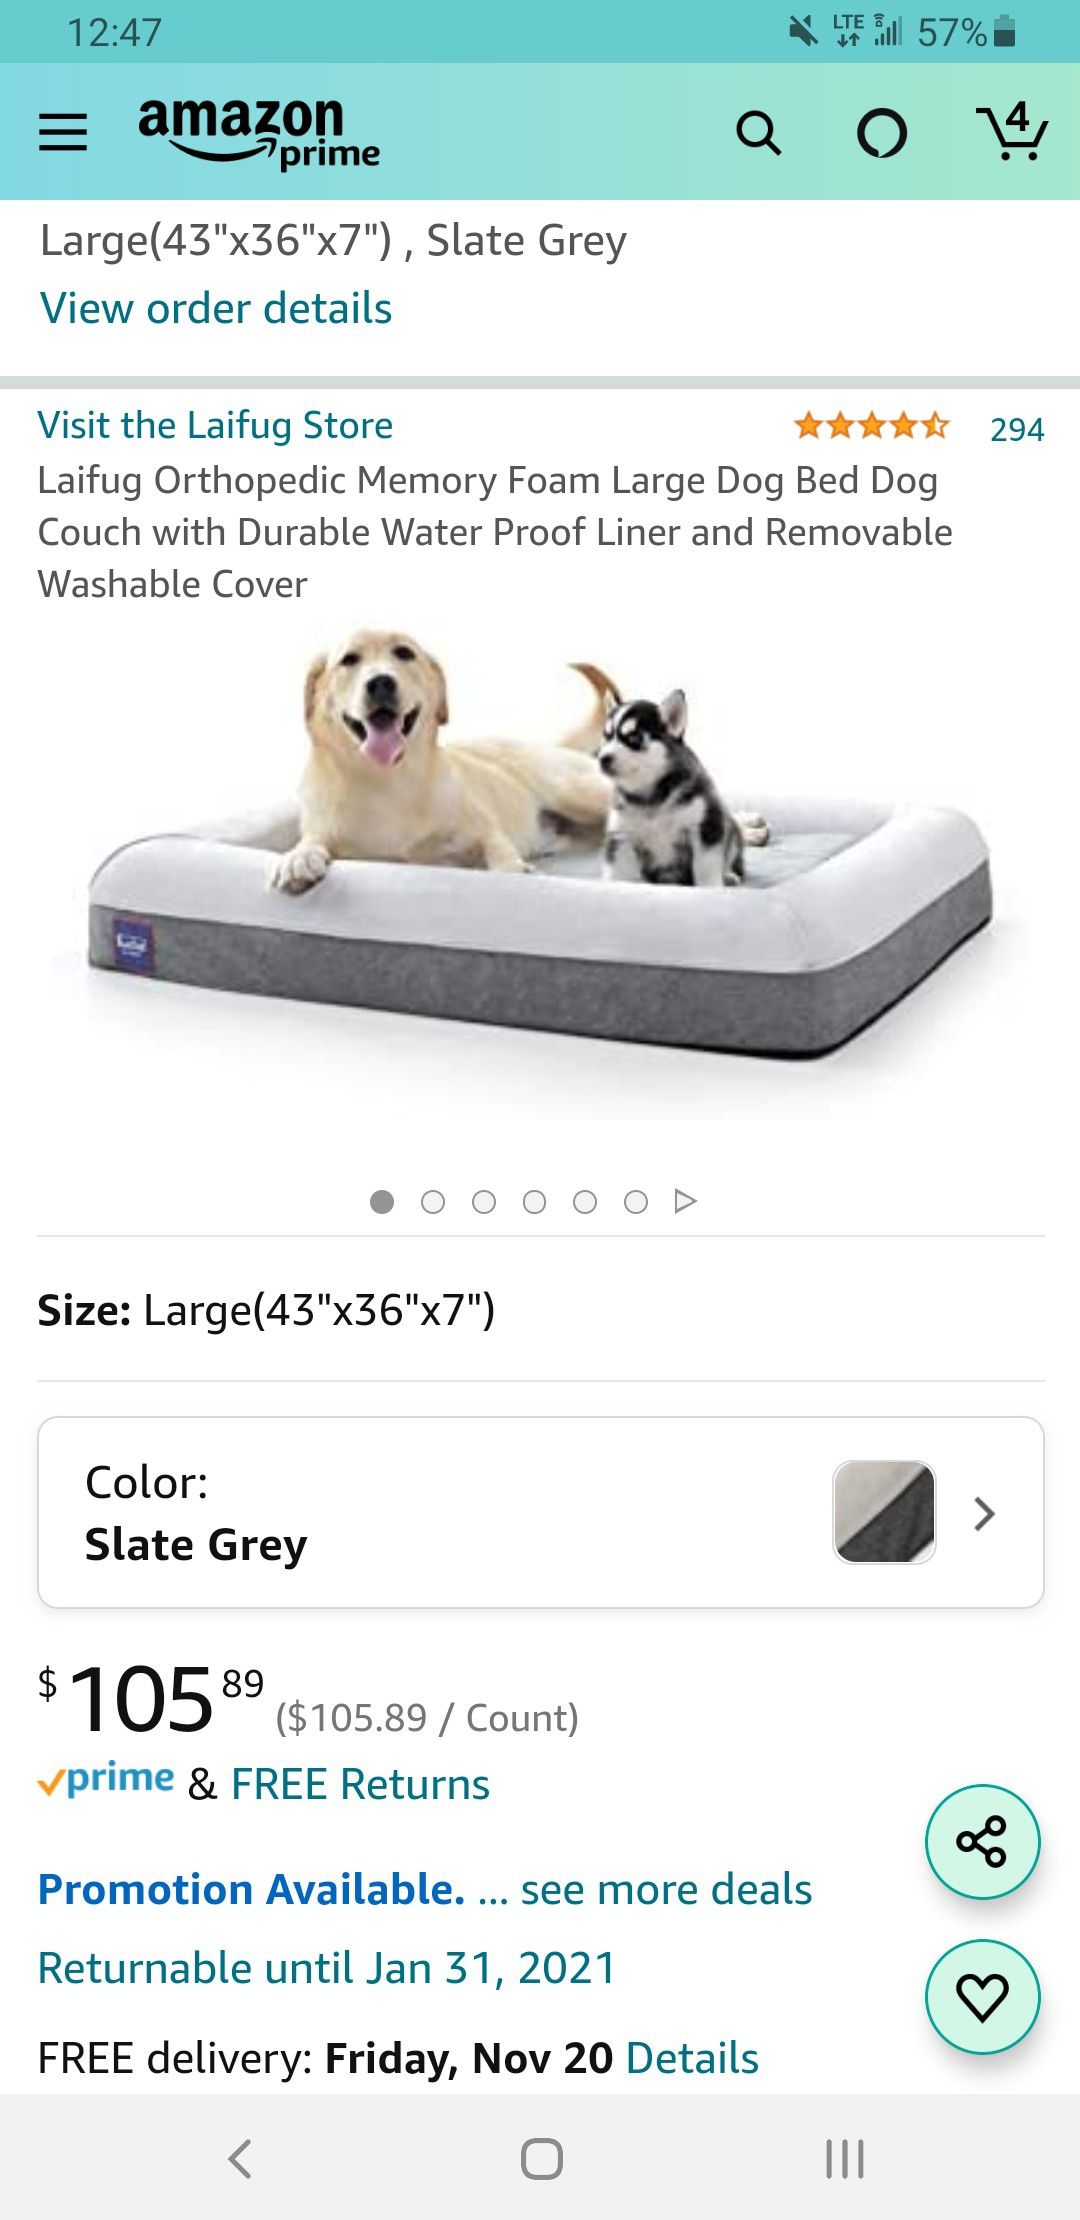 Laifug orthopedic memory foam dog bed (large)